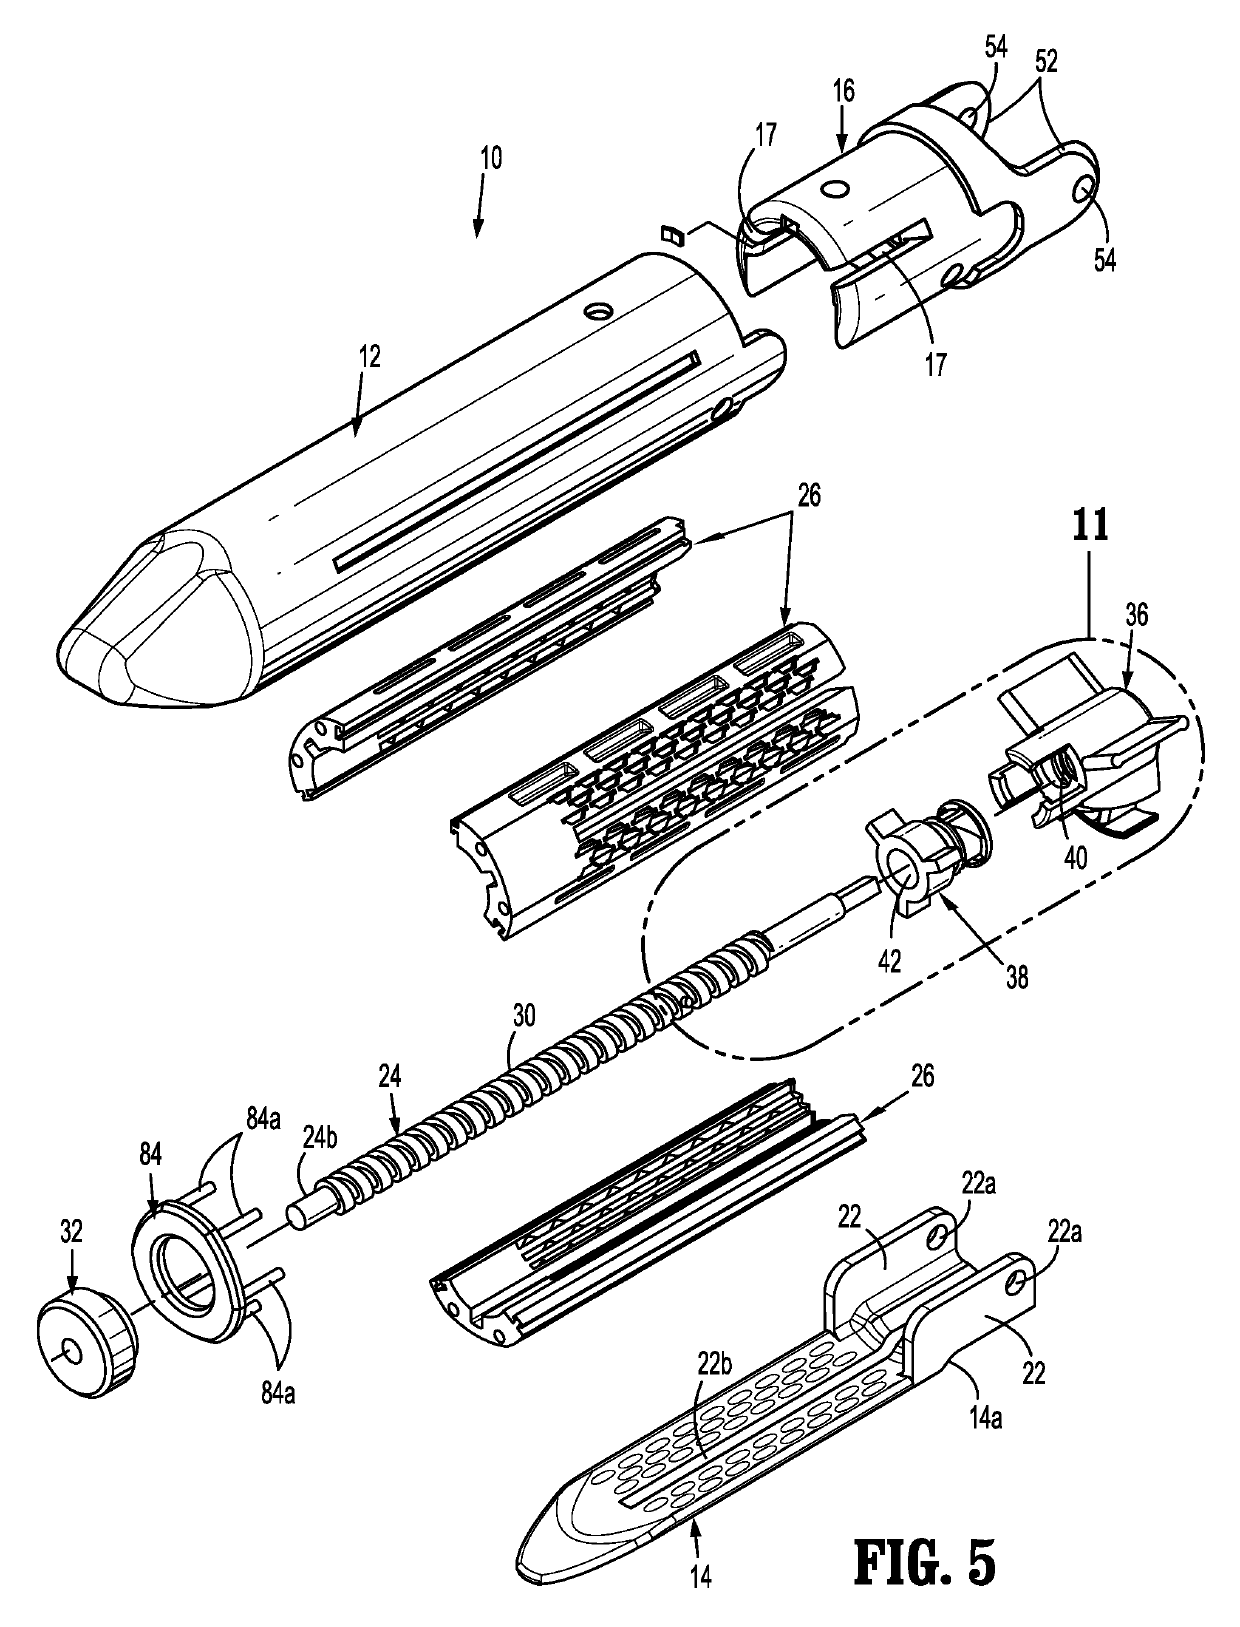 Multi-fire lead screw stapling device